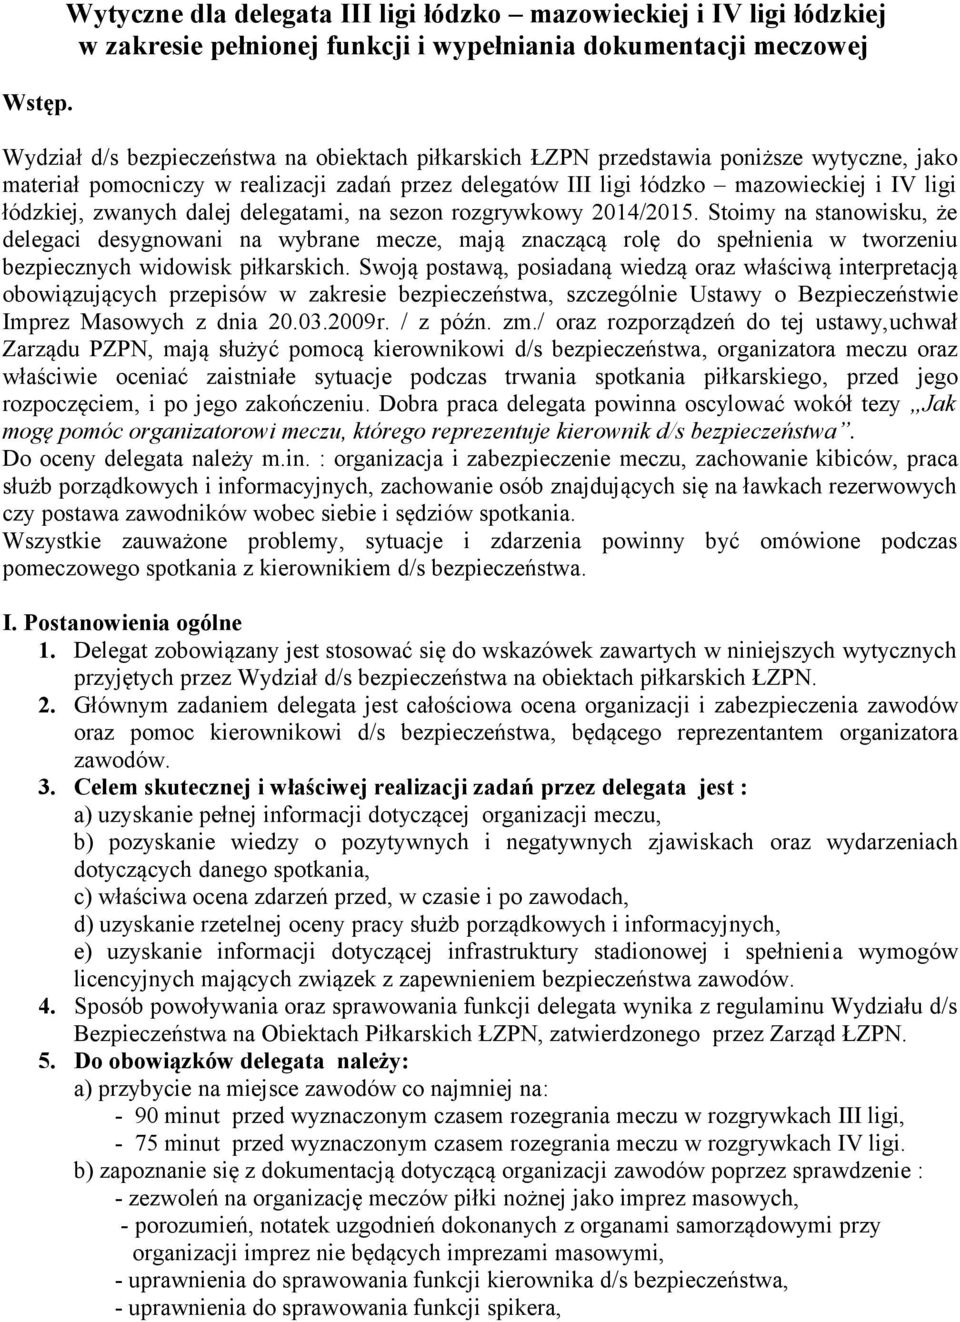 przedstawia poniższe wytyczne, jako materiał pomocniczy w realizacji zadań przez delegatów III ligi łódzko mazowieckiej i IV ligi łódzkiej, zwanych dalej delegatami, na sezon rozgrywkowy 2014/2015.